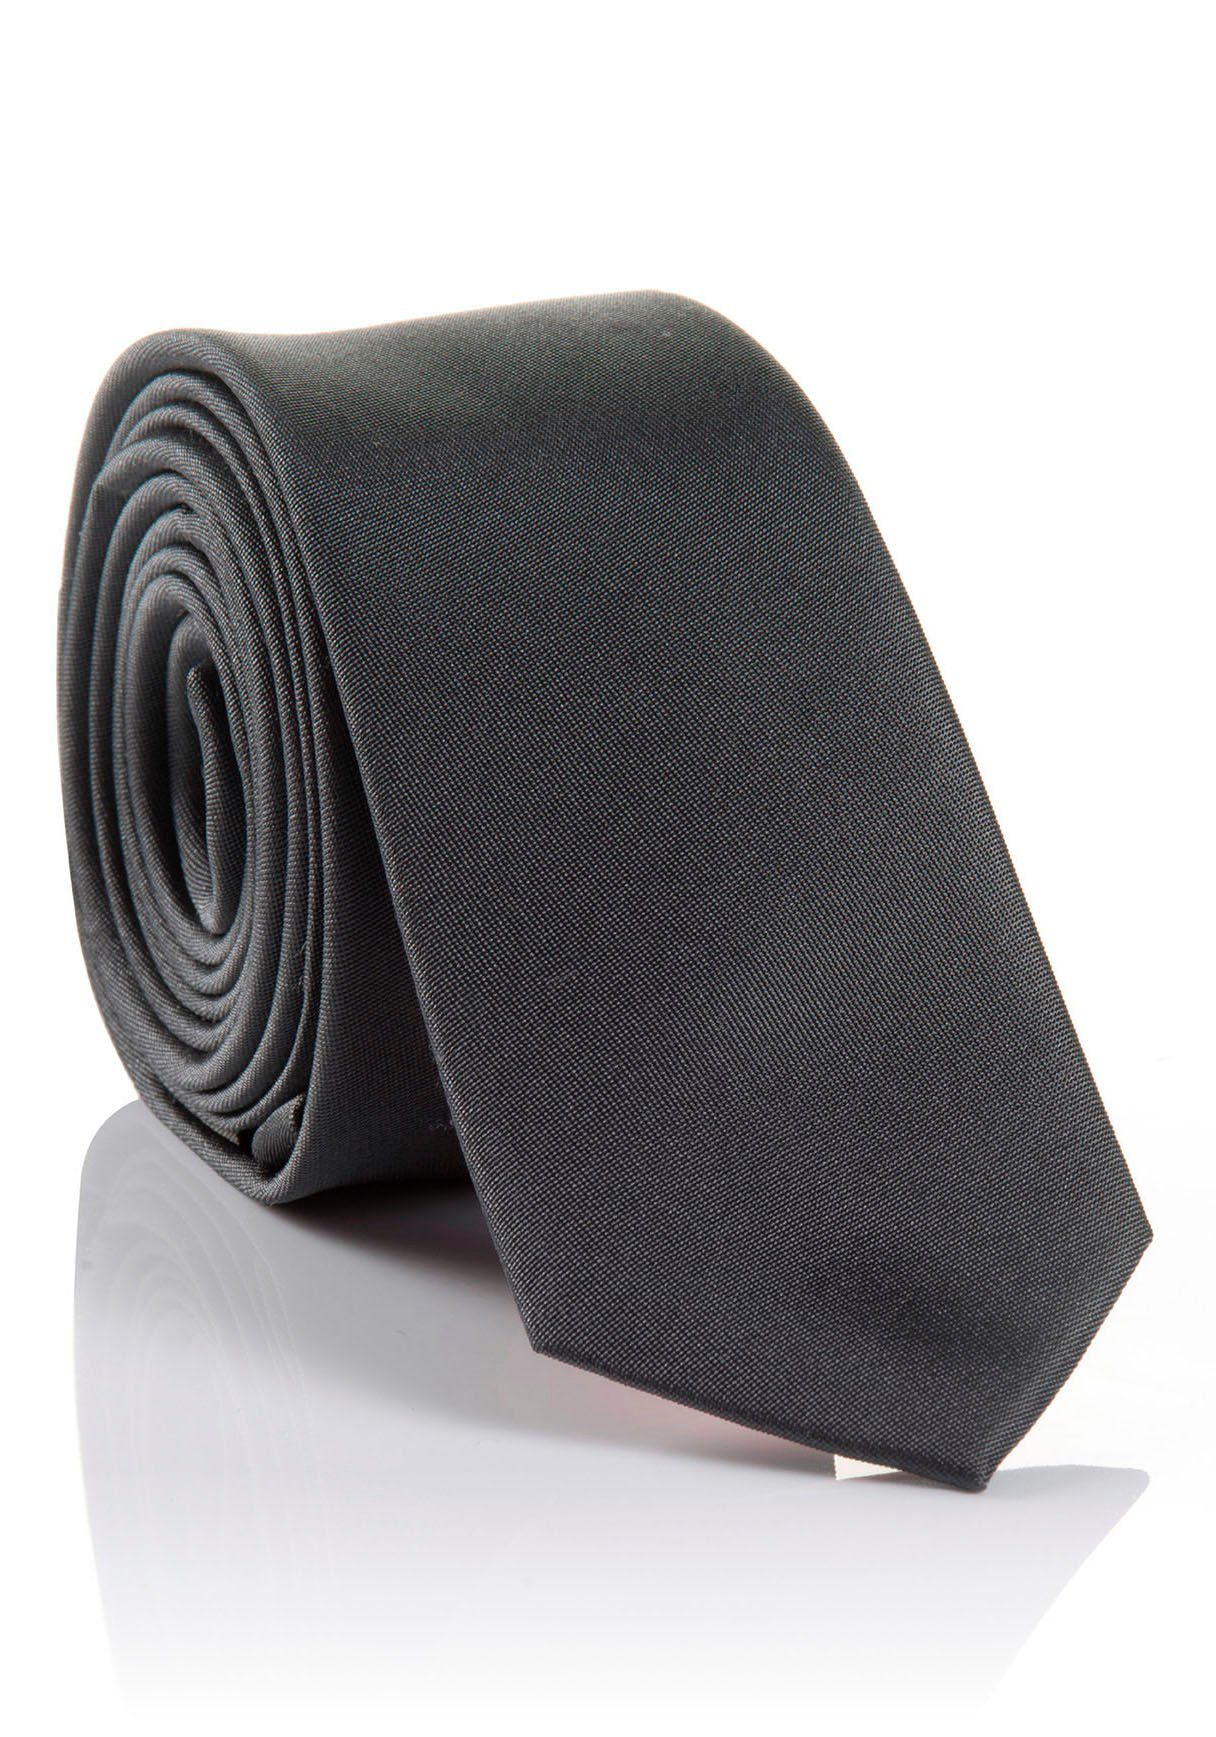 MONTI Krawatte LORENZO Hochwertig verarbeitete Seidenkrawatte mit hohem Tragekomfort grey